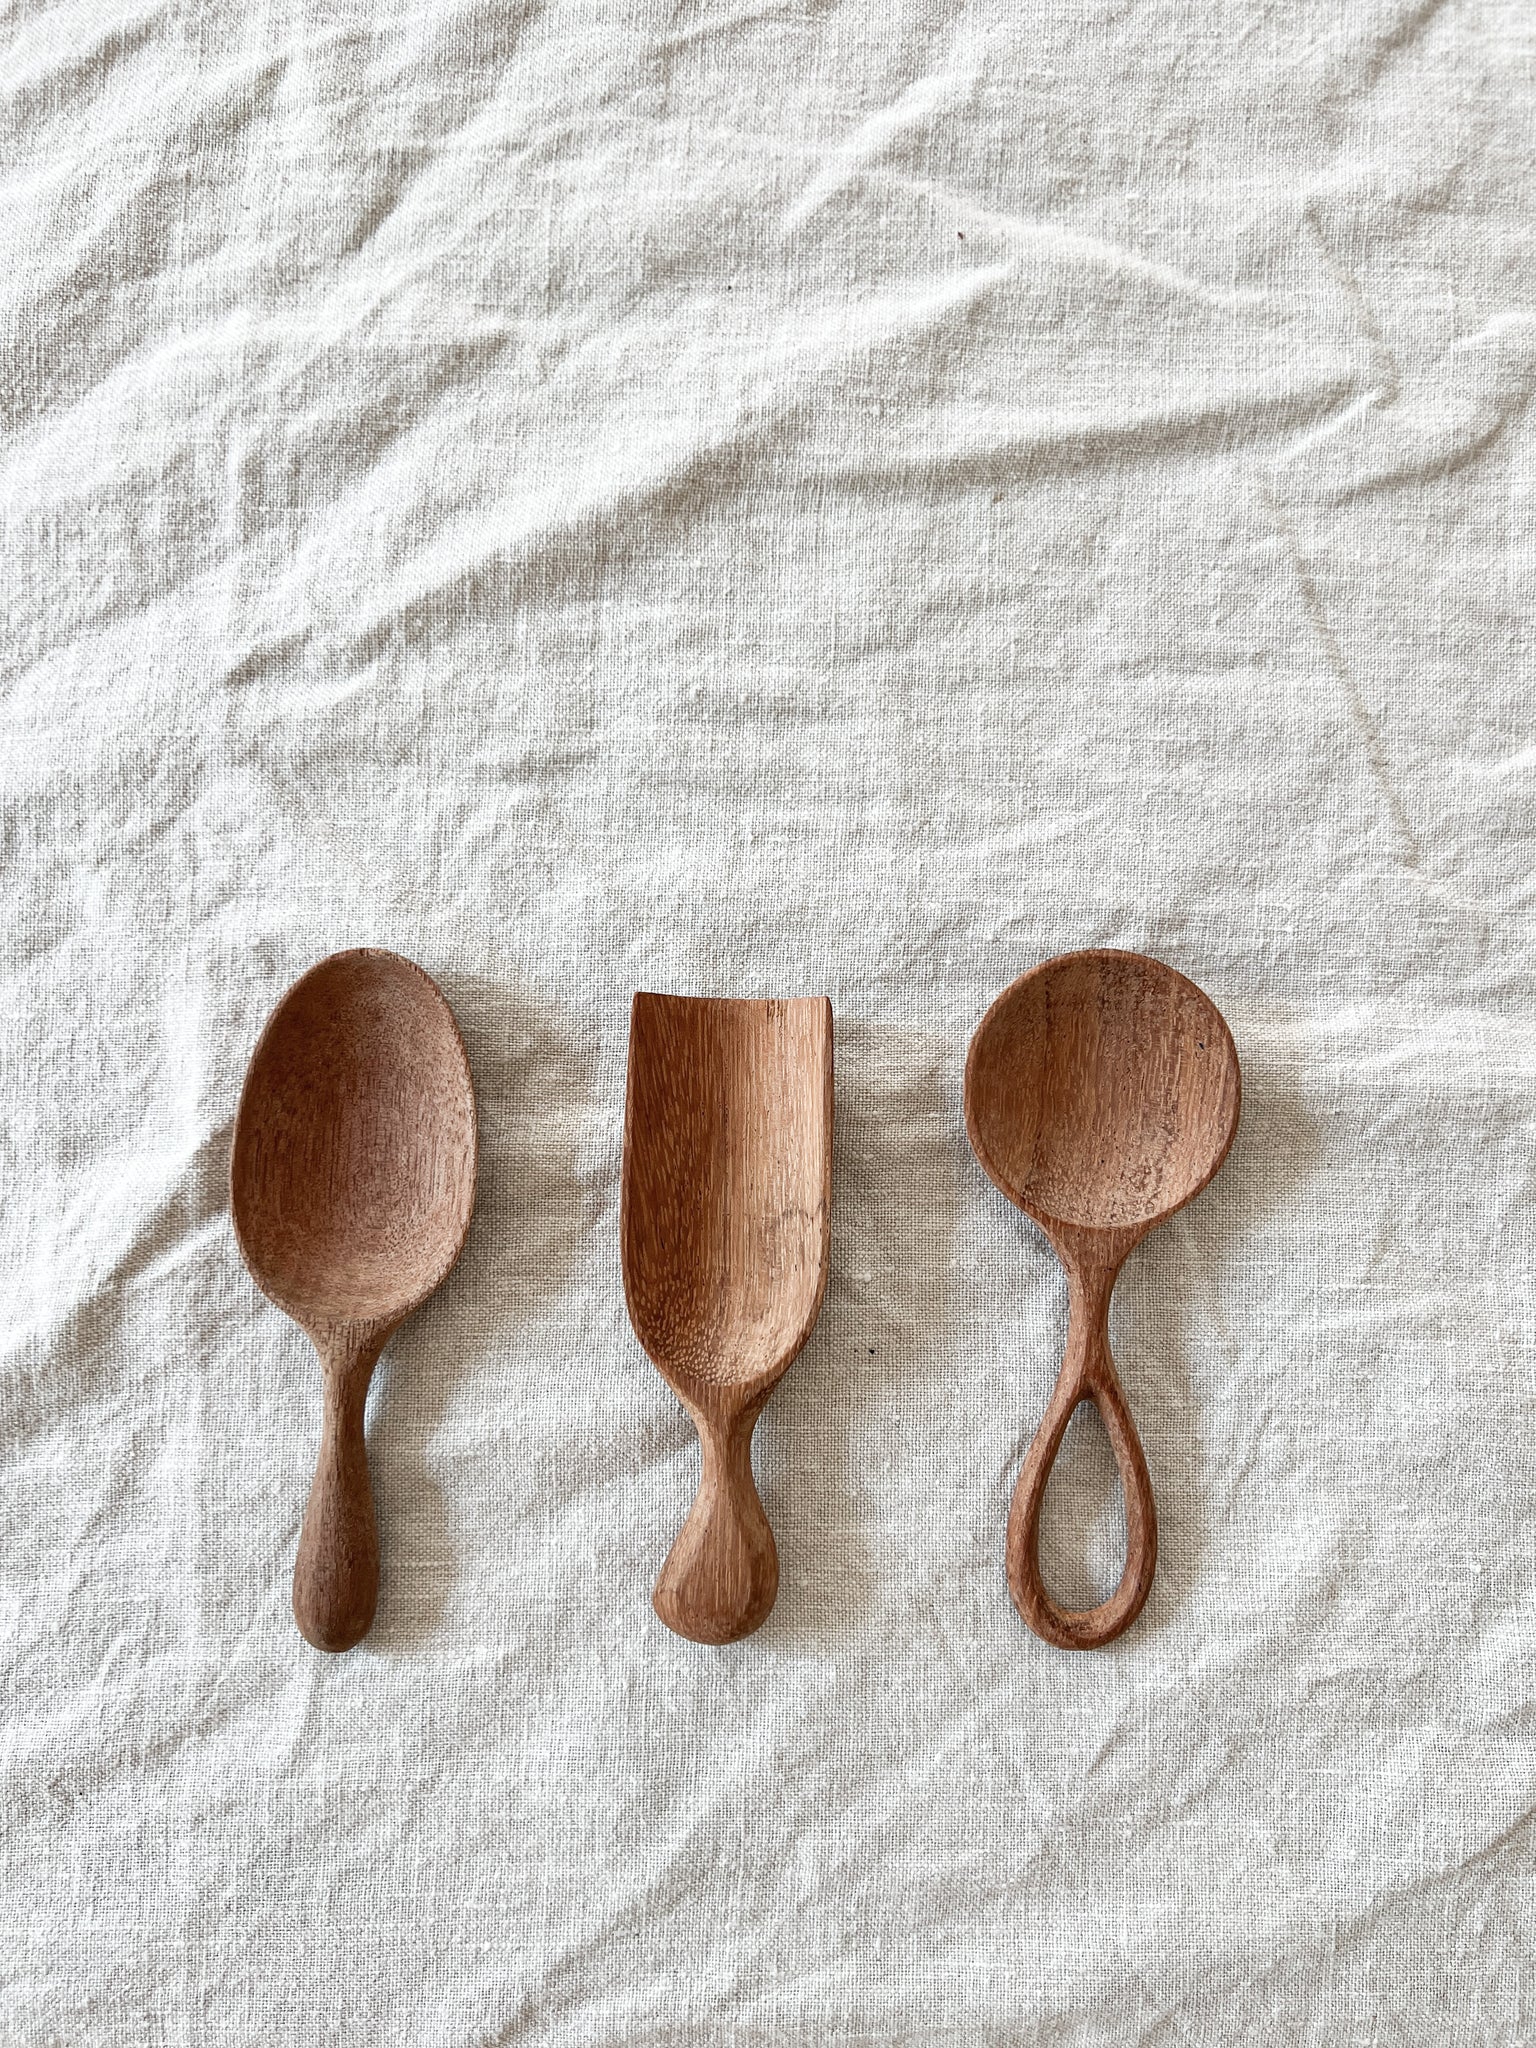 Wooden Scoops / Spoons